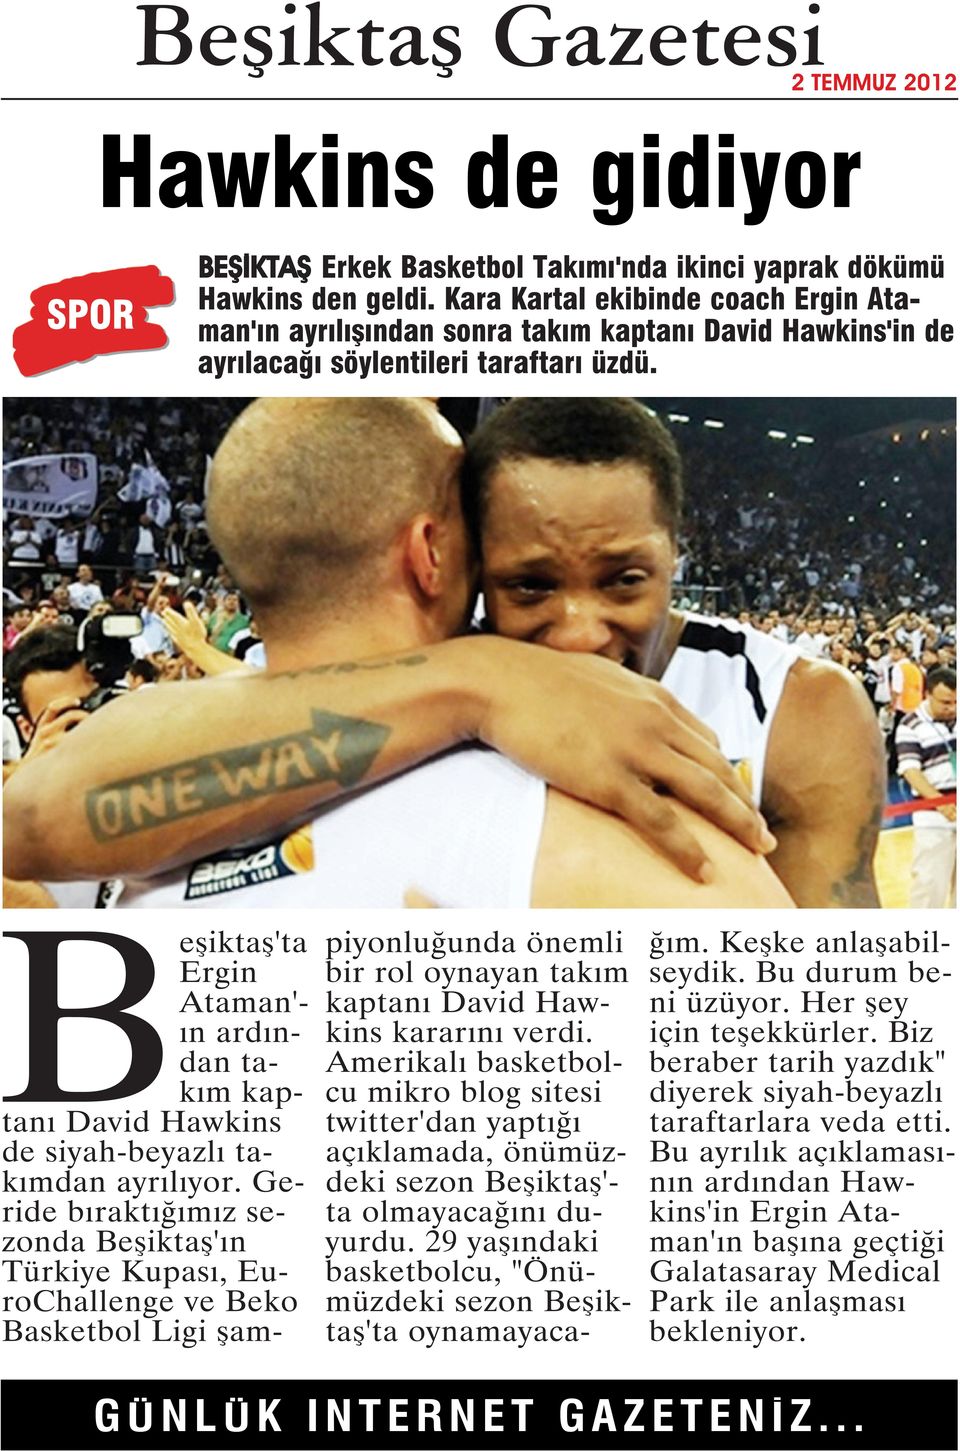 Beşiktaş'ta Ergin Ataman'- ın ardından takım kaptanı David Hawkins de siyah-beyazlı takımdan ayrılıyor.